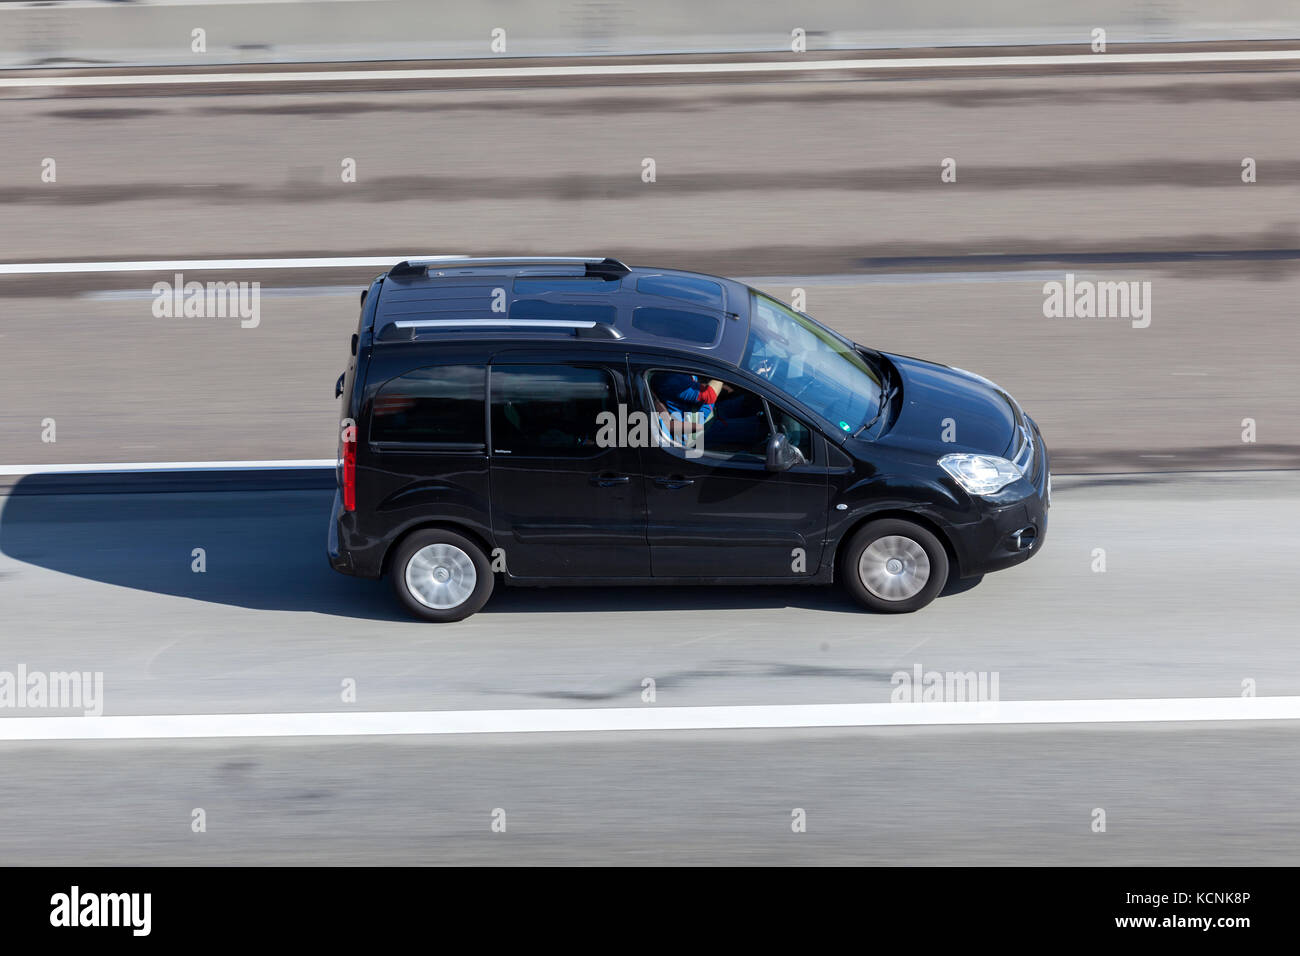 Francfort, Allemagne - Sep 19, 2017 : Citroen Berlingo fourgonnette roulant sur l'autoroute en Allemagne Banque D'Images